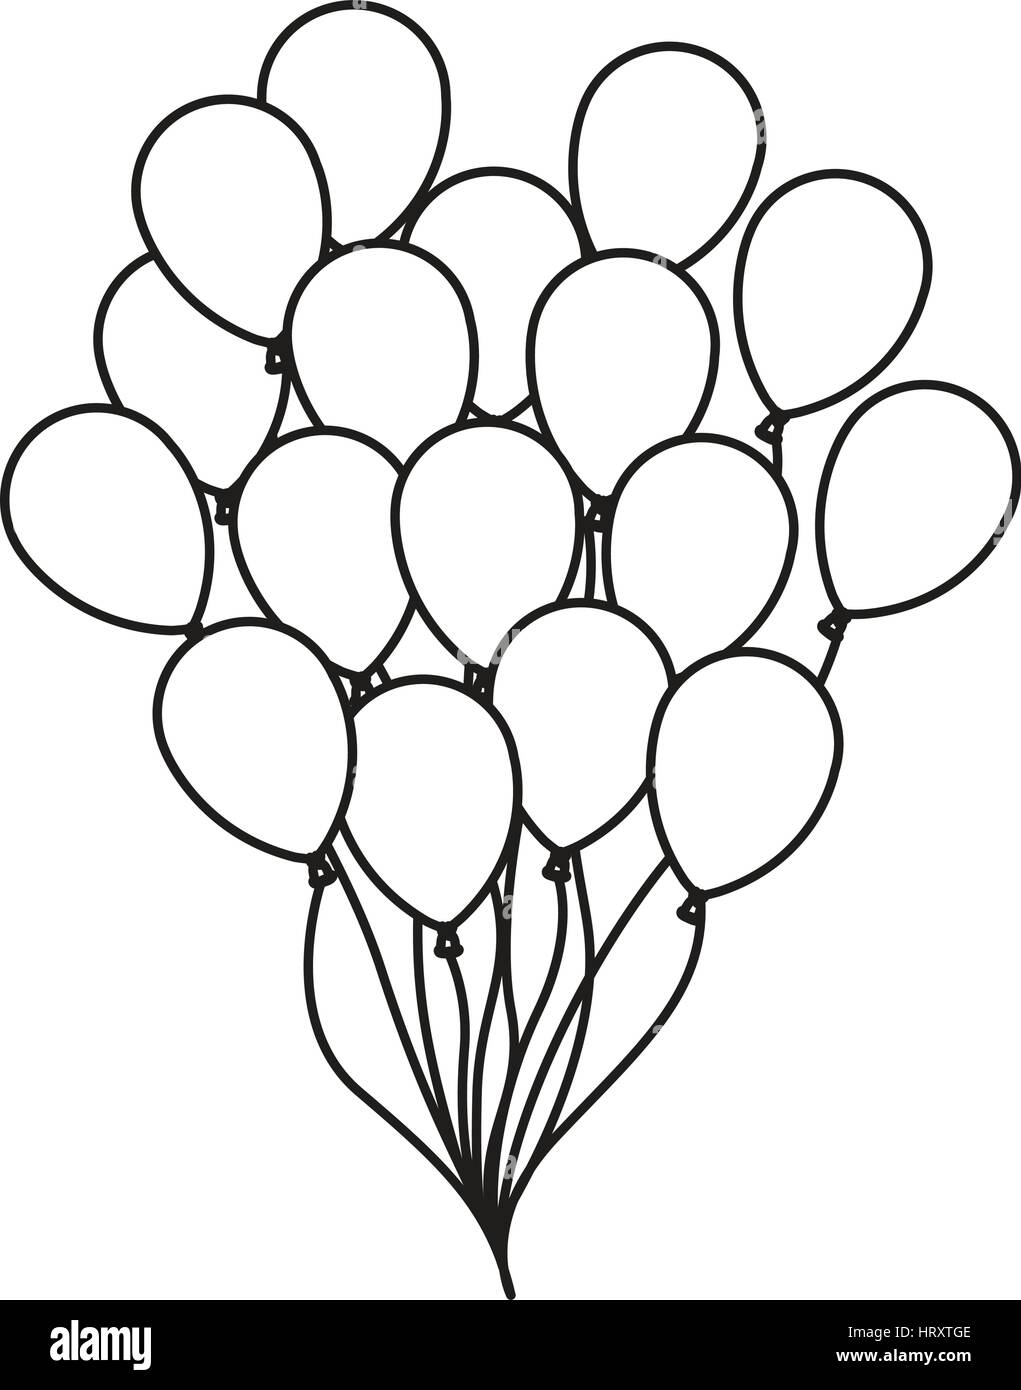 Silhouette dessin bouquet de ballons d'anniversaire de partie de vol Image  Vectorielle Stock - Alamy